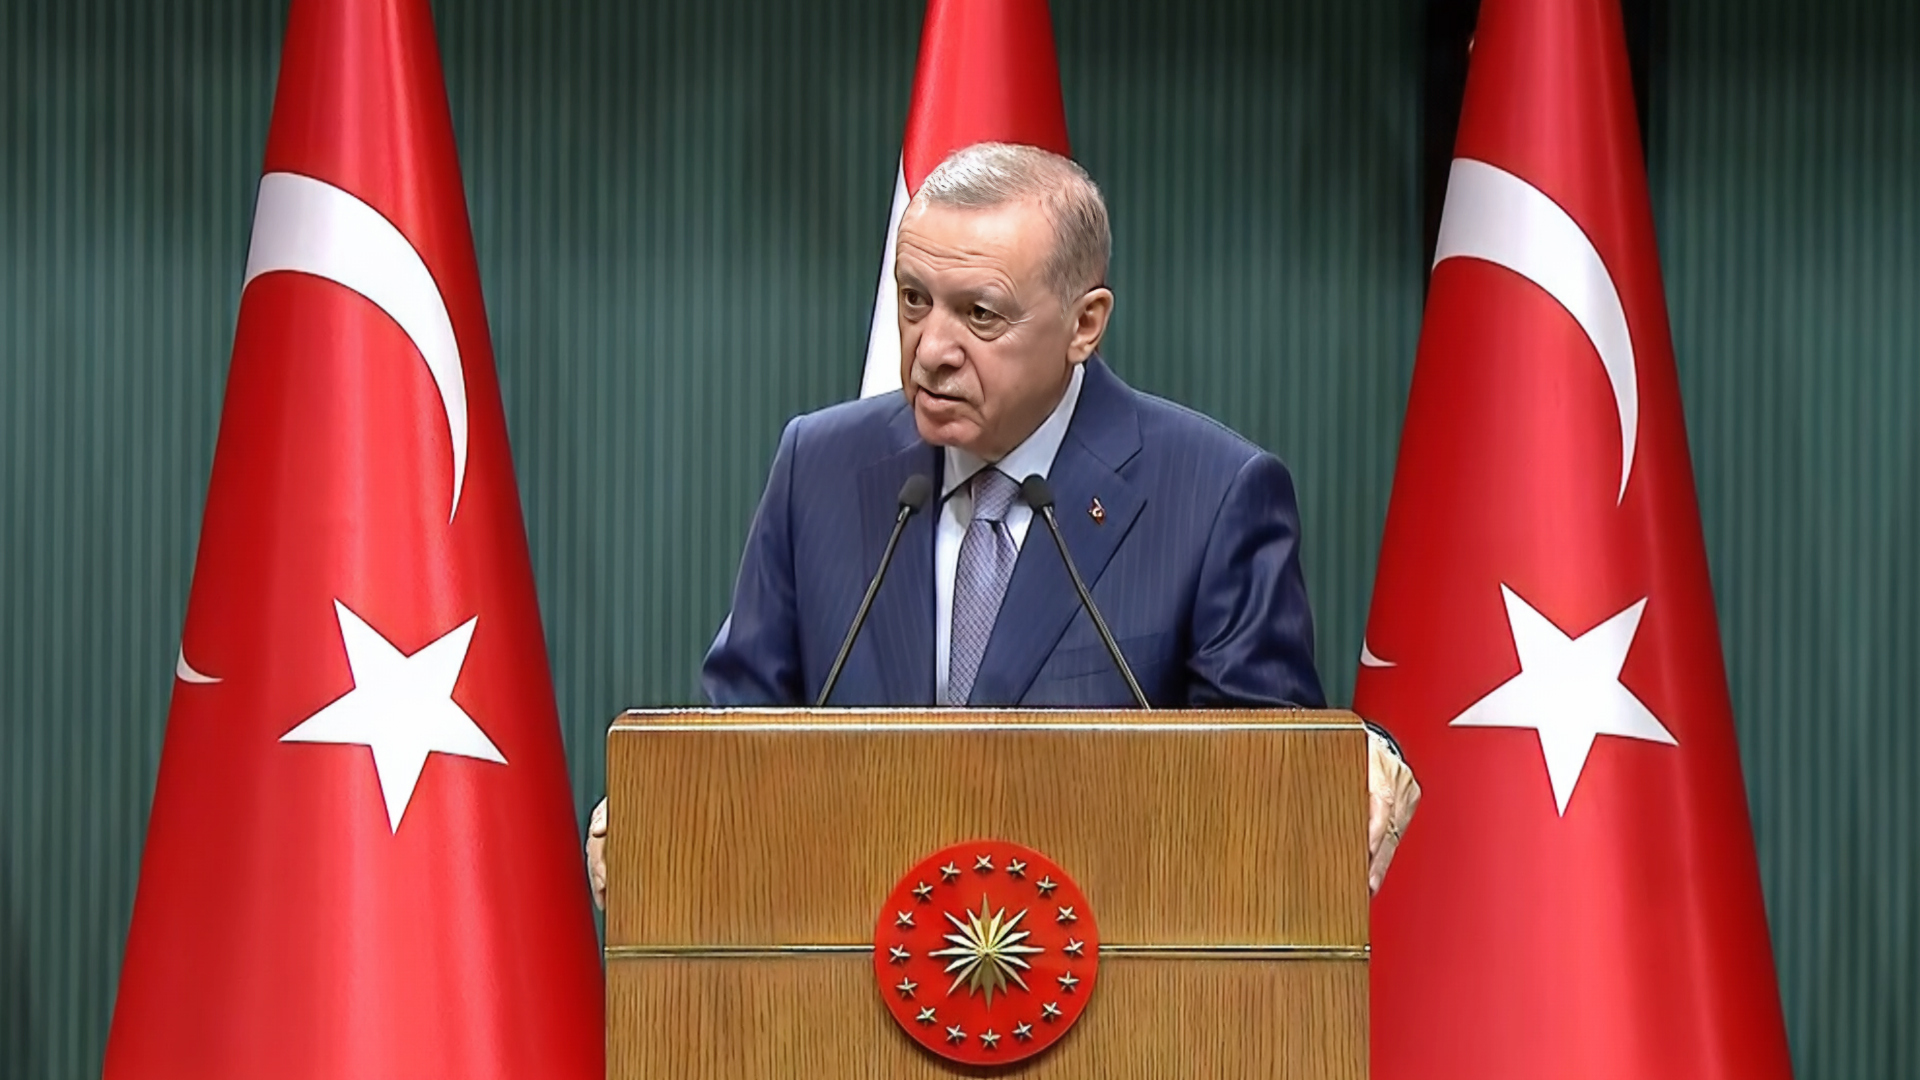 أردوغان يحذر من مجازر في غزة بعد إرسال أميركا حاملة طائرات | أخبار – البوكس نيوز